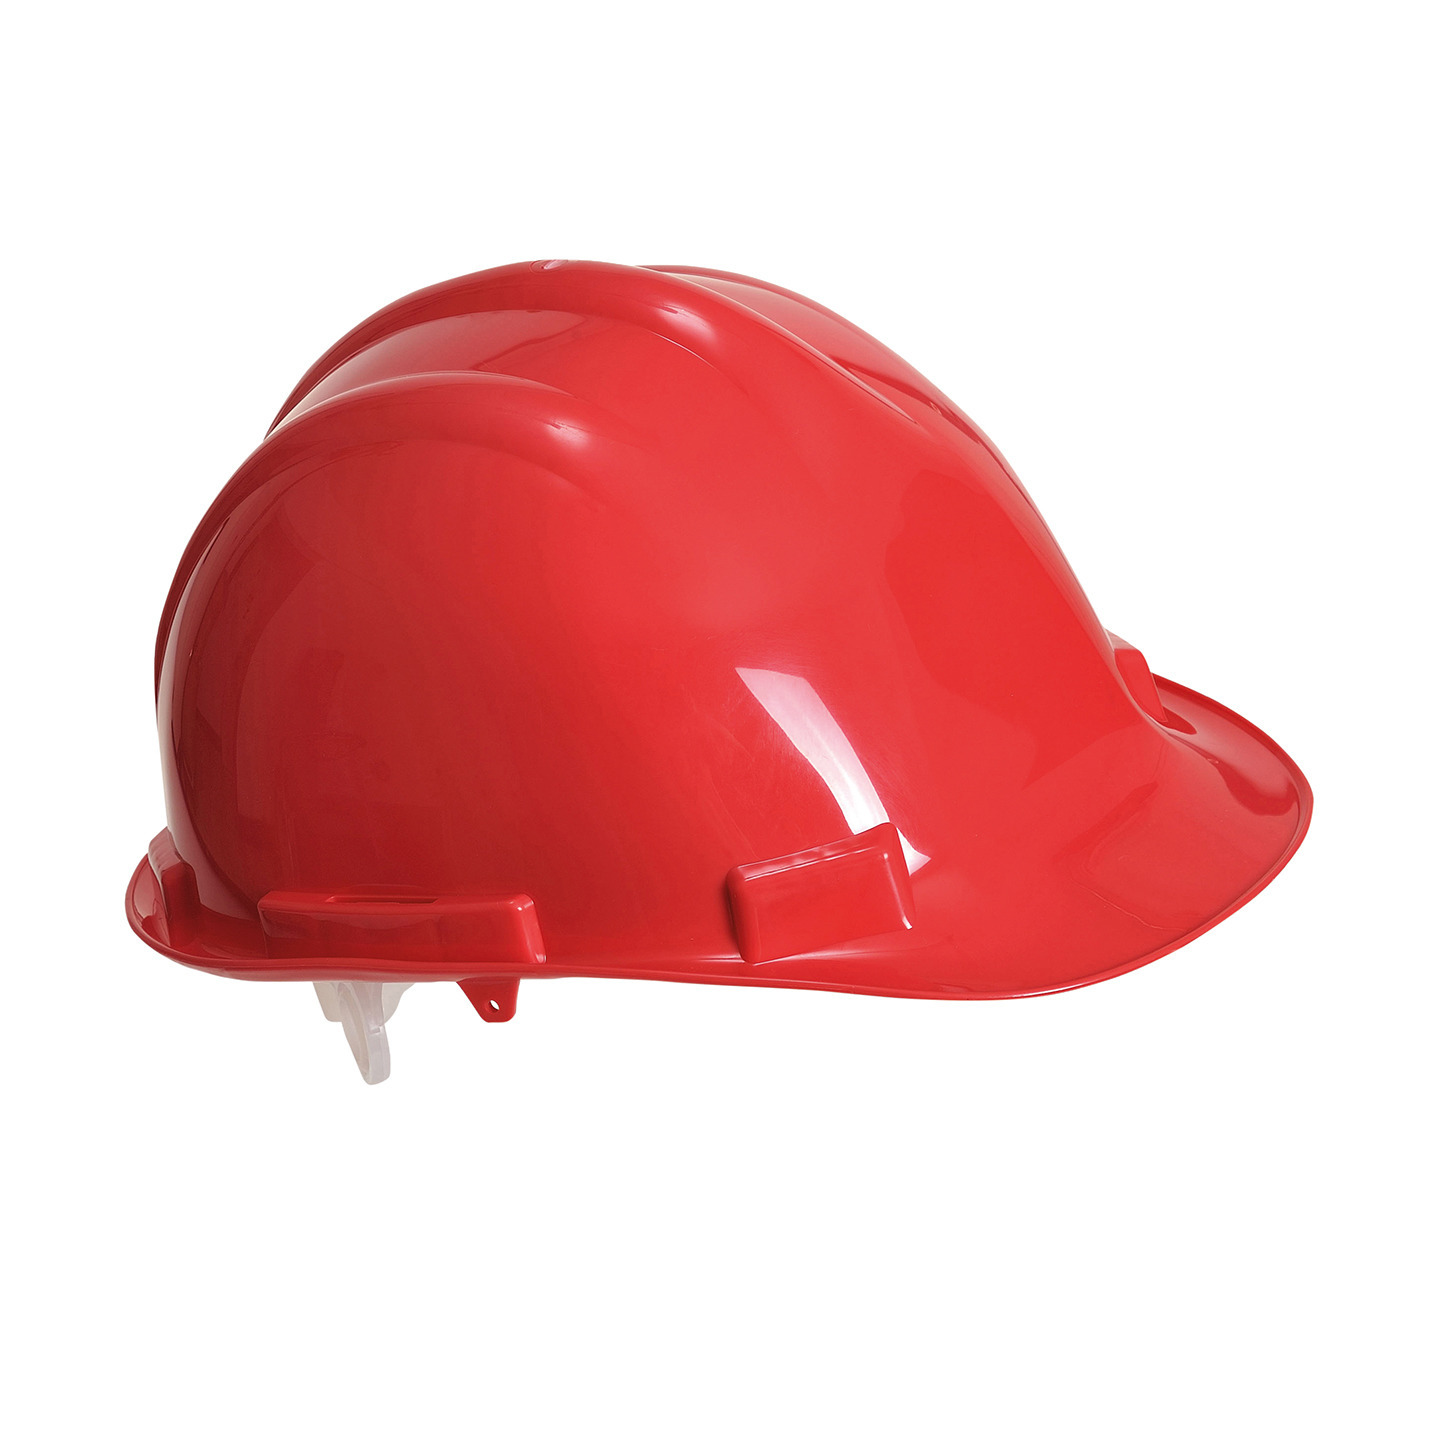 Set van 3x stuks veiligheidshelmen-bouwhelmen hoofdbescherming rood verstelbaar 55-62 cm